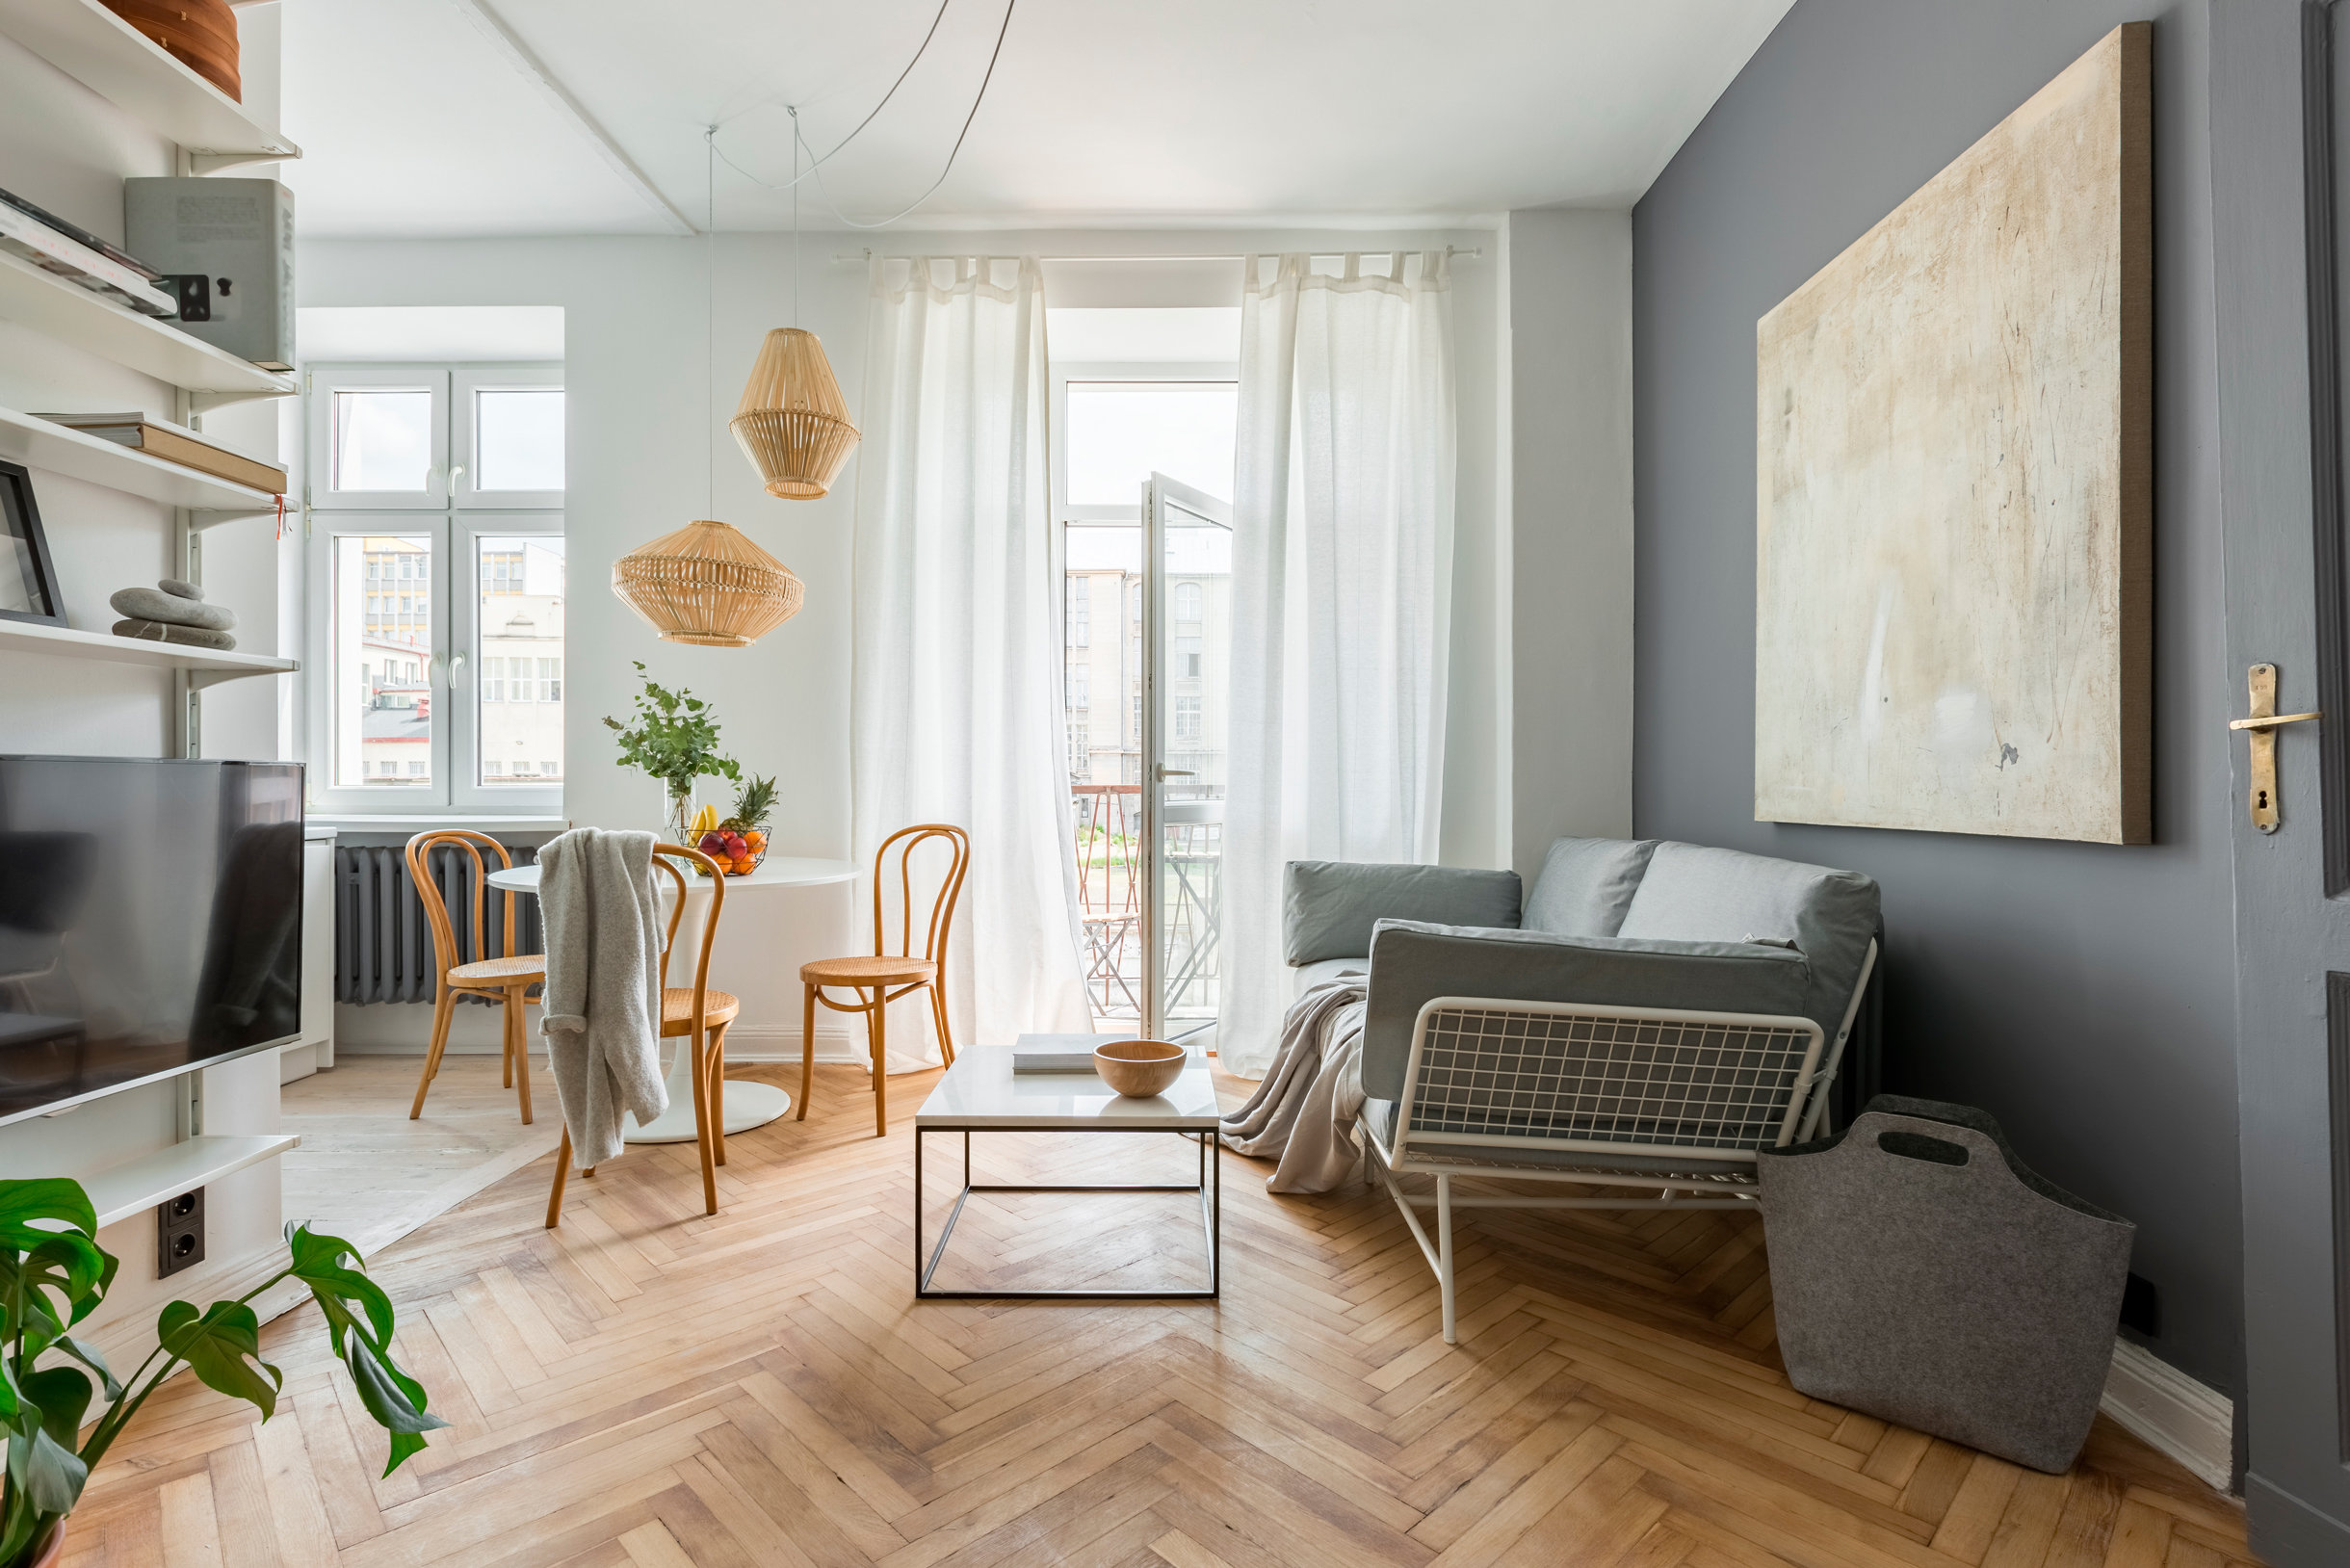 Типичная скандинавская гостиная: оттенки серого и дерева, светлые стены и преимущественно белая мебель. Фотография: Dariusz Jarzabek / Shutterstock / FOTODOM